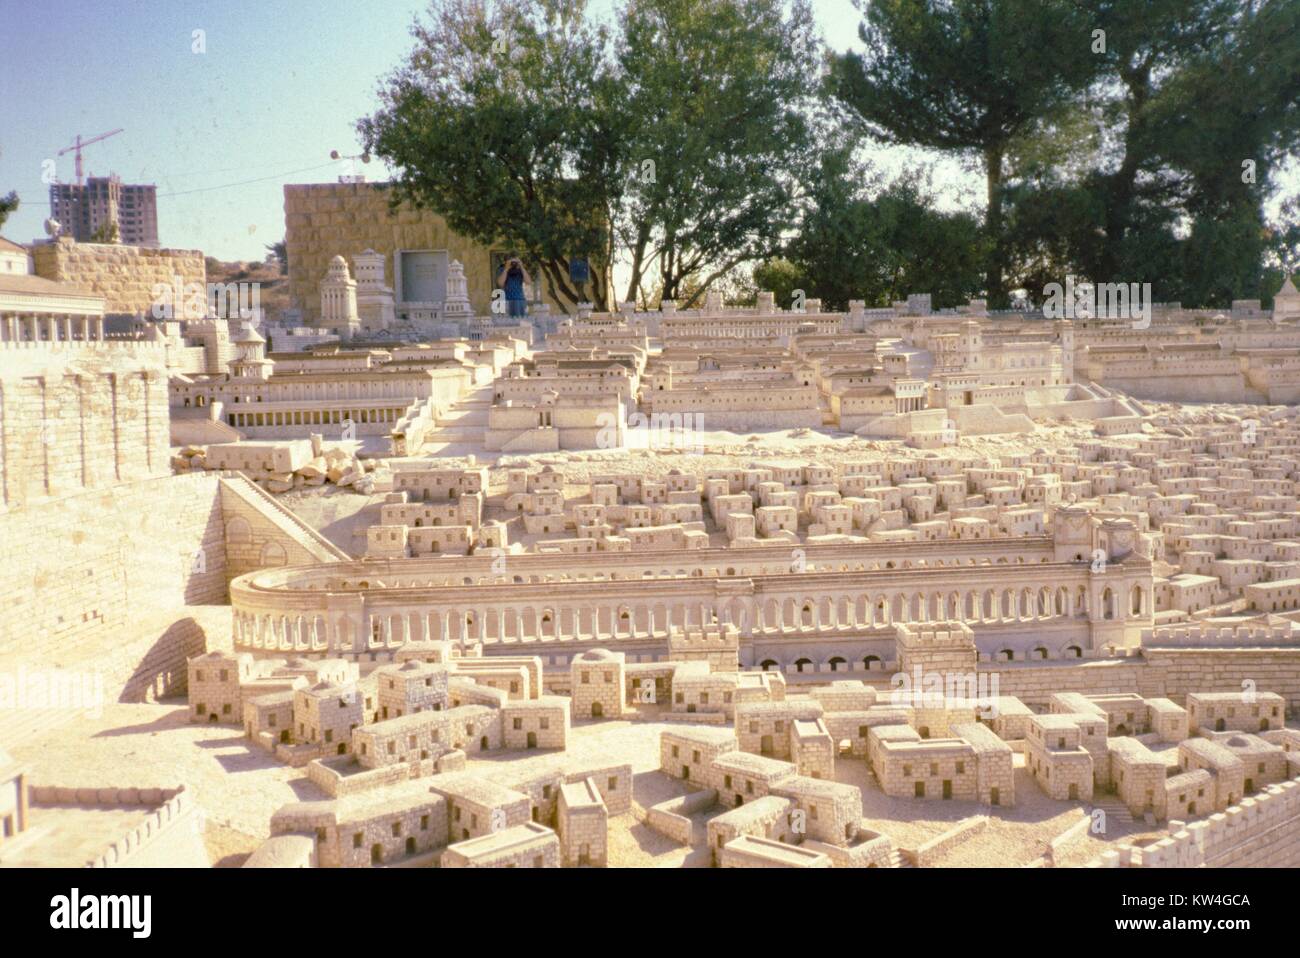 Holyland Modell von Jerusalem, ein Modell der Stadt Jerusalem, wie sie in den biblischen Zeiten erschienen sind, Jerusalem, Israel, 1975. Stockfoto